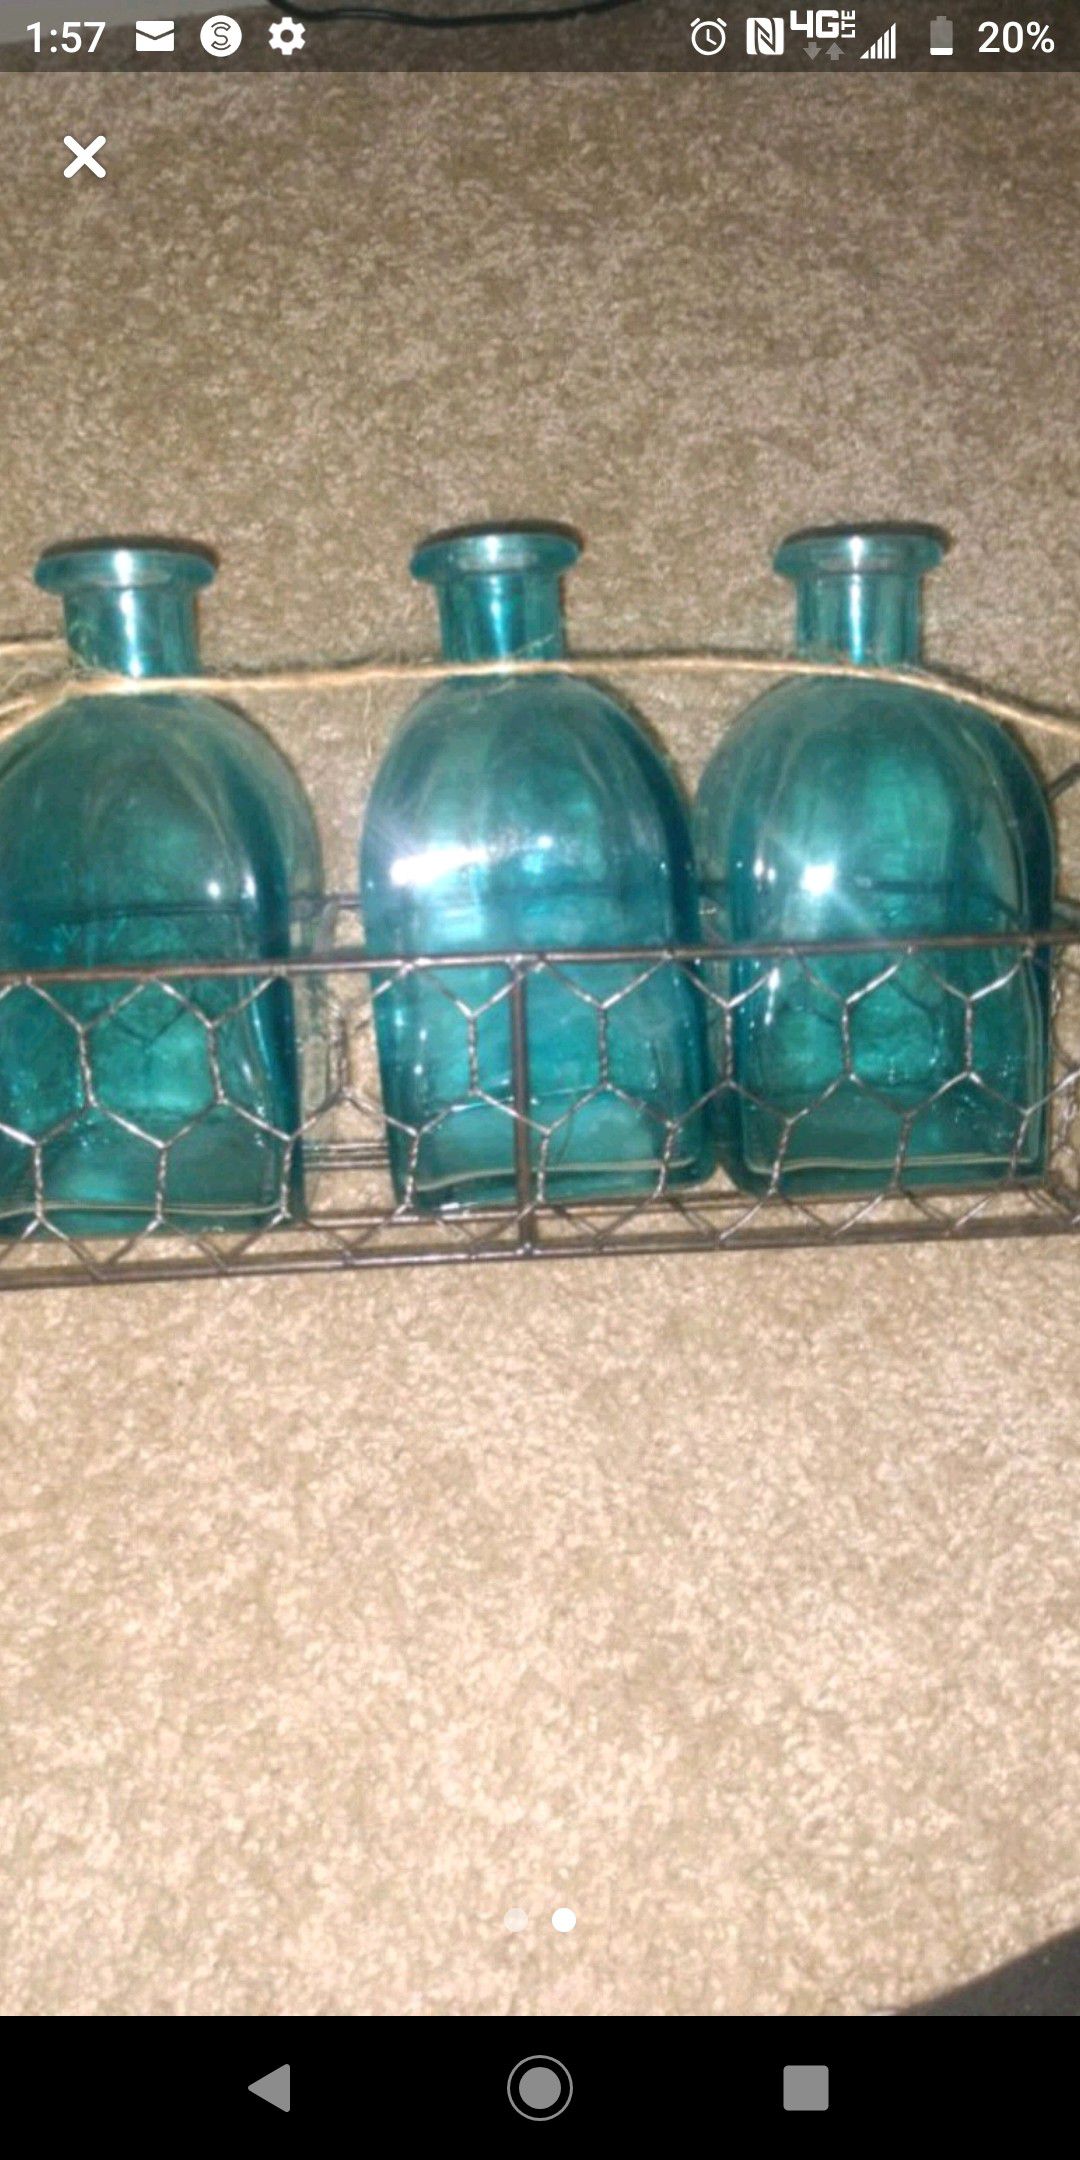 Teal decorative bottles